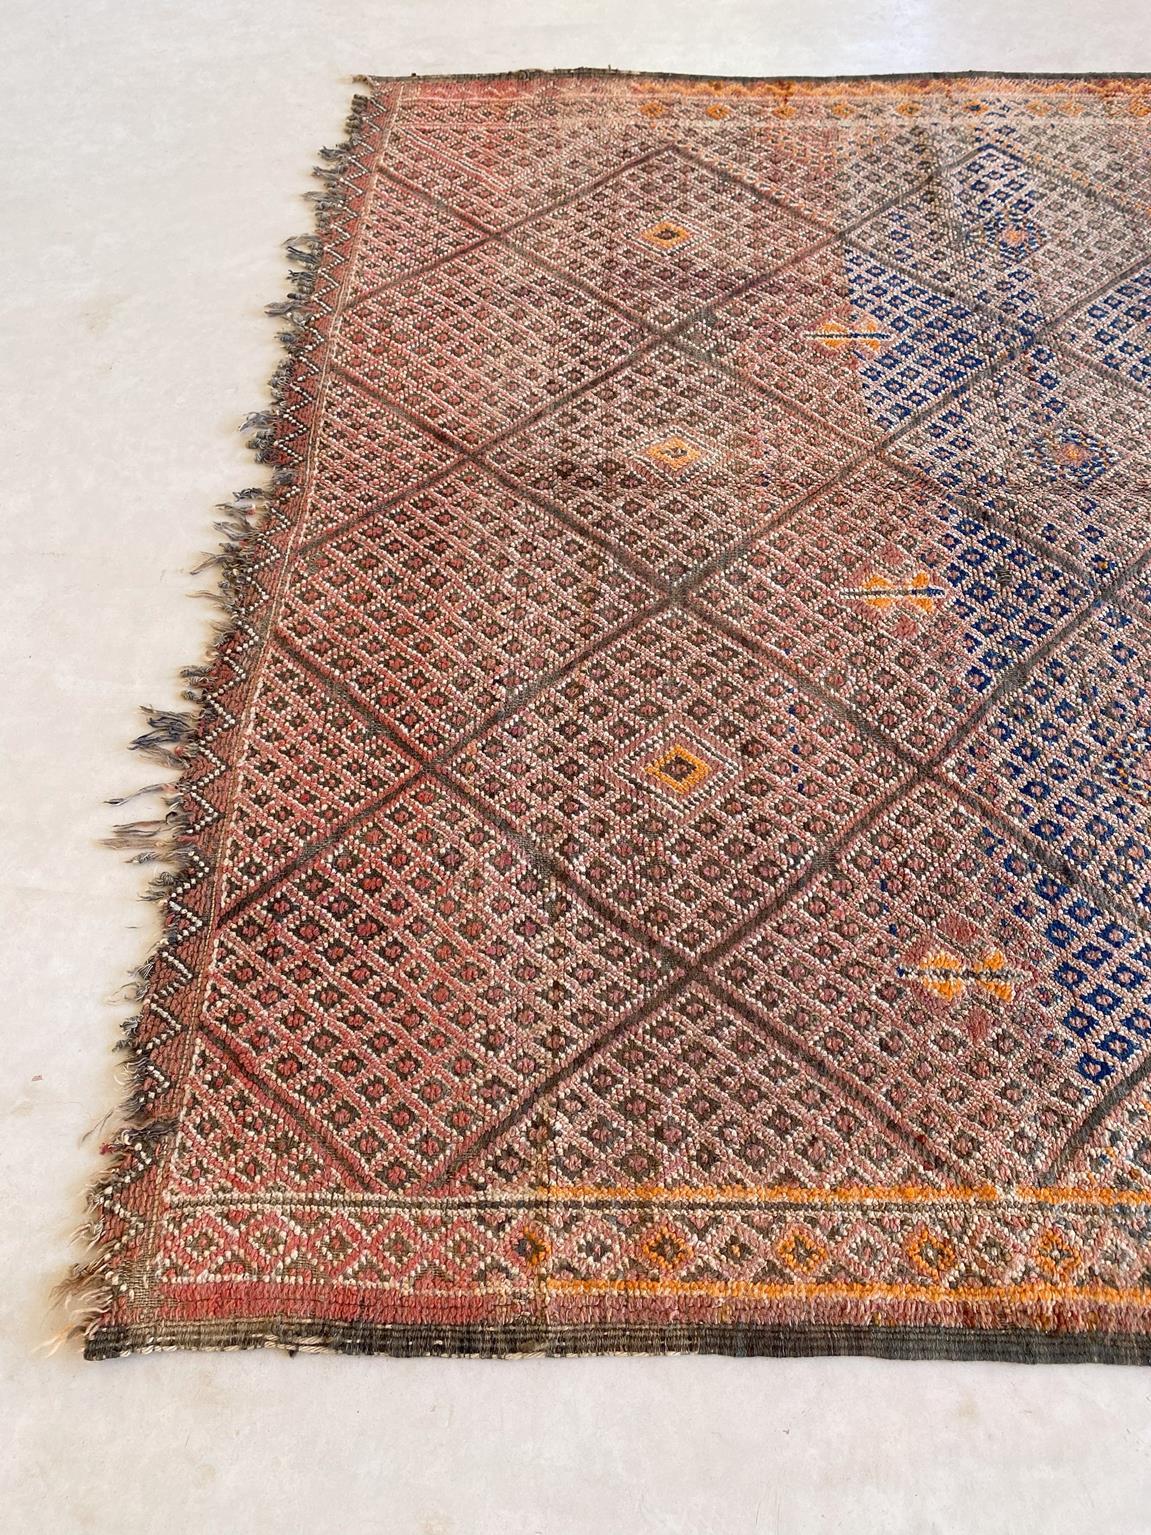 Vintage Beni Mguild rug - Orange/terracotta/blue - 6.1x9.8feet / 186x298cm For Sale 4